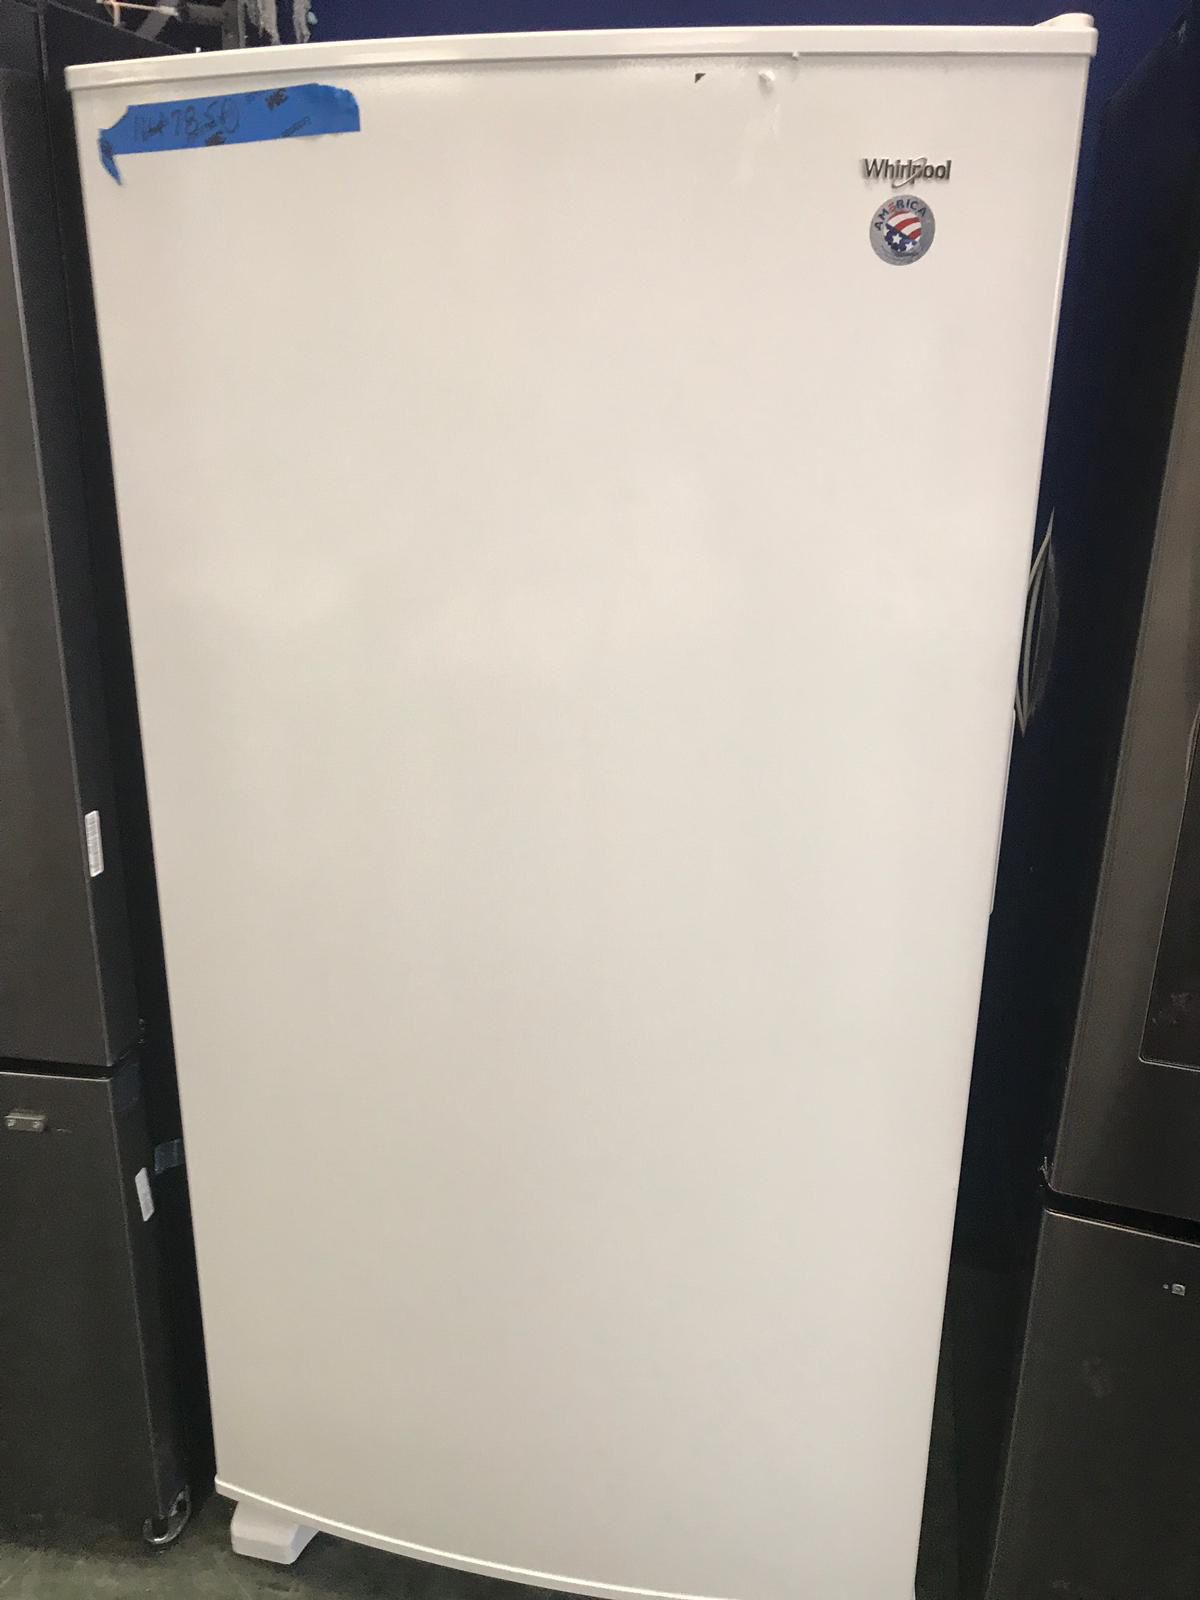 New whirlpool upright freezer with one year warranty